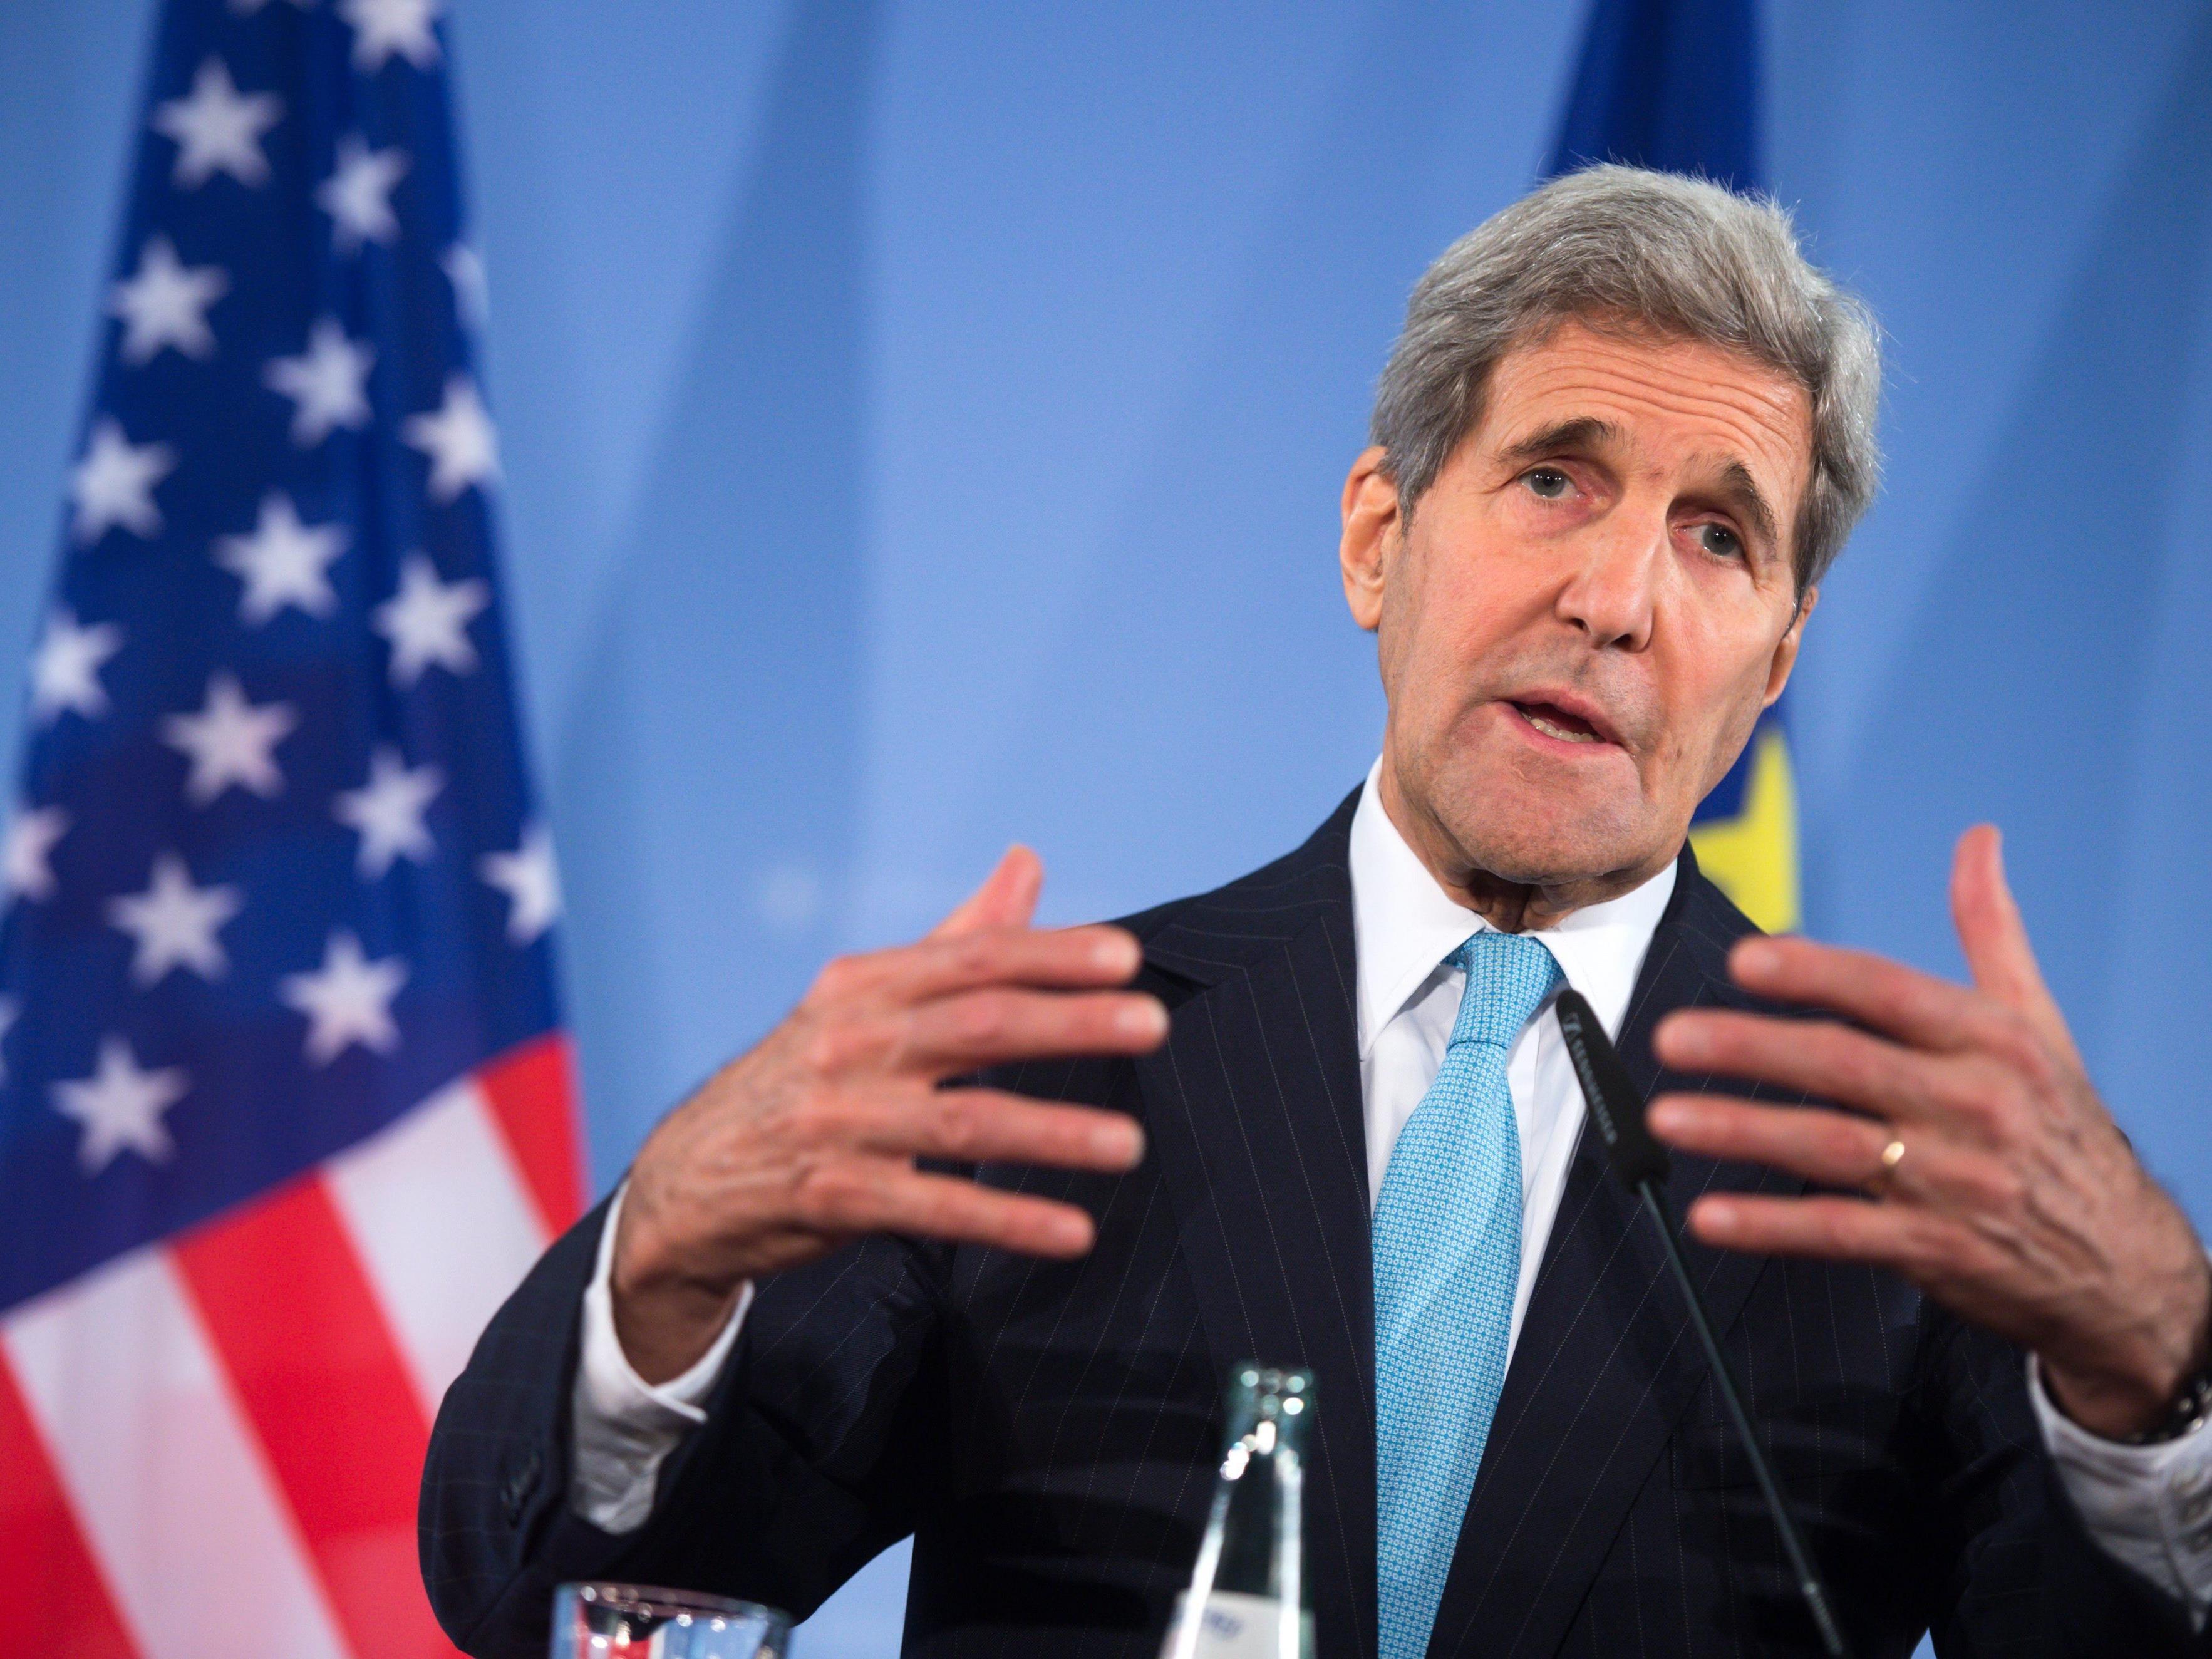 John Kerry zeigte sich zufrieden über die Wiener Syrien-Konferenz.